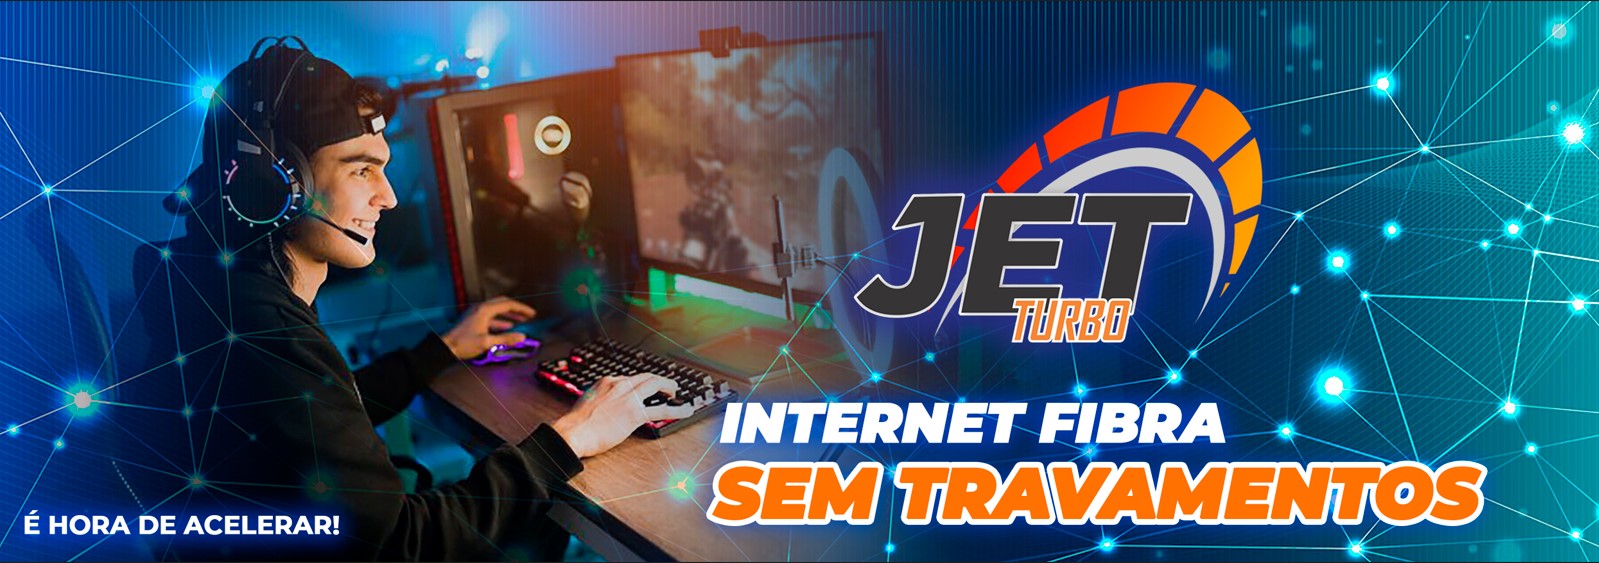 Internet Fibra em Goiânia Jet Turbo - a melhor internet de goiania com estabilidade e aprovacao de muitos clientes 2